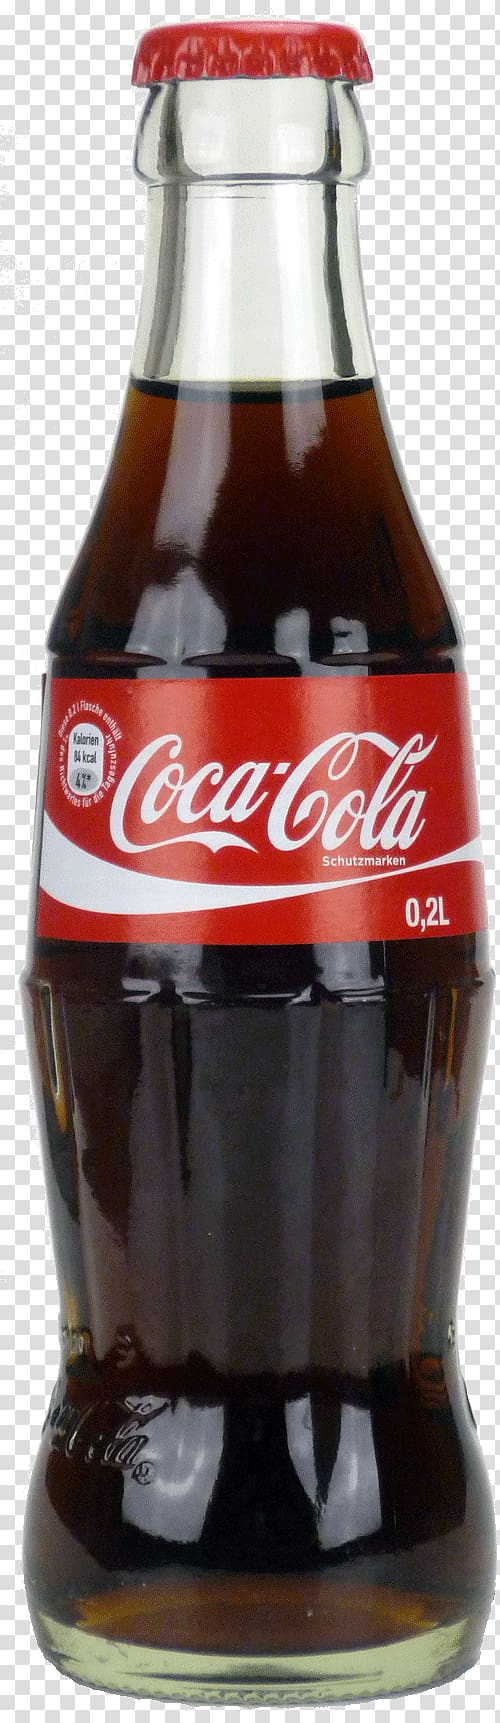 Coca-Cola Soft drink , Coca Cola bottle , Coca-Cola bottle transparent background PNG clipart